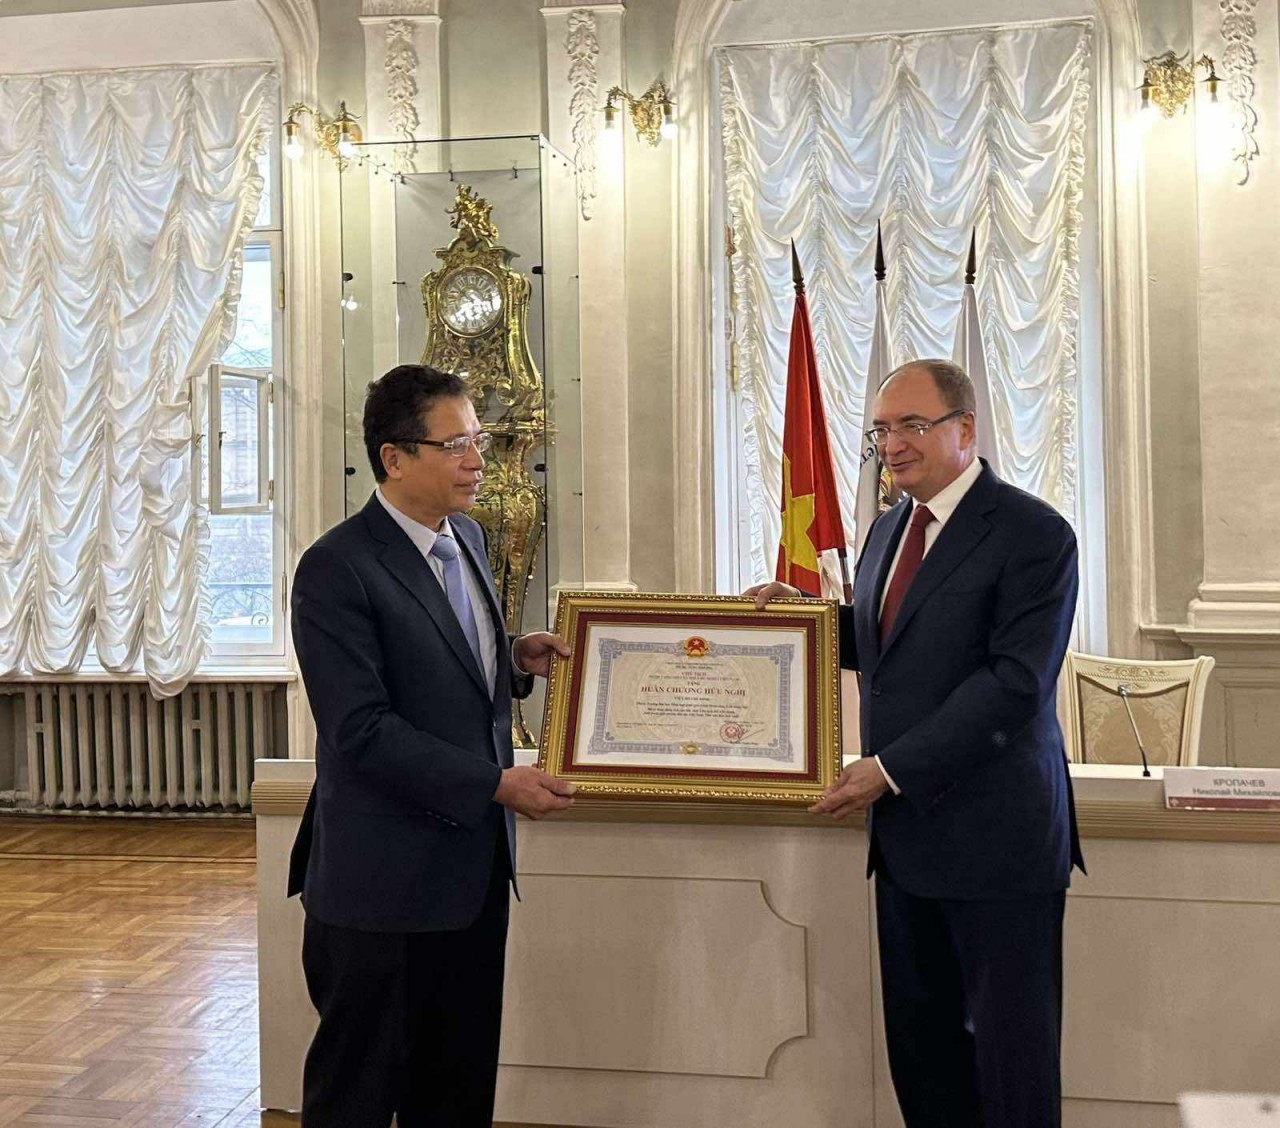 Trao tặng Huân chương Hữu nghị cho Thống đốc Saint Petersburg và Viện Hồ Chí Minh - Đại học Tổng hợp Saint Petersburg